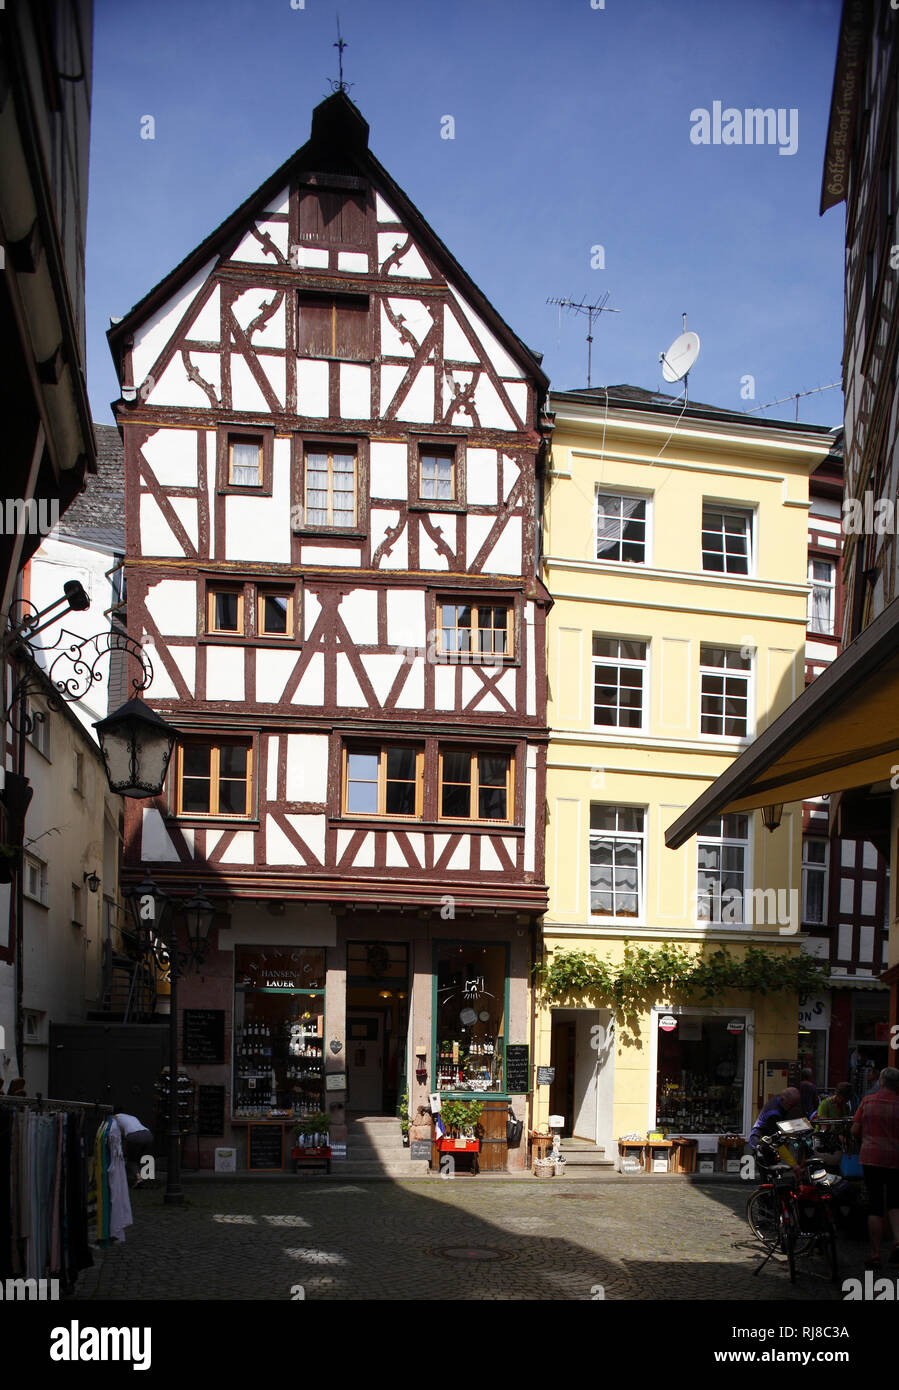 Fachwerkhaus in der Altstadt von Bernkastel, Bernkastel-Kues, Rheinland-Pfalz, Deutschland Stock Photo